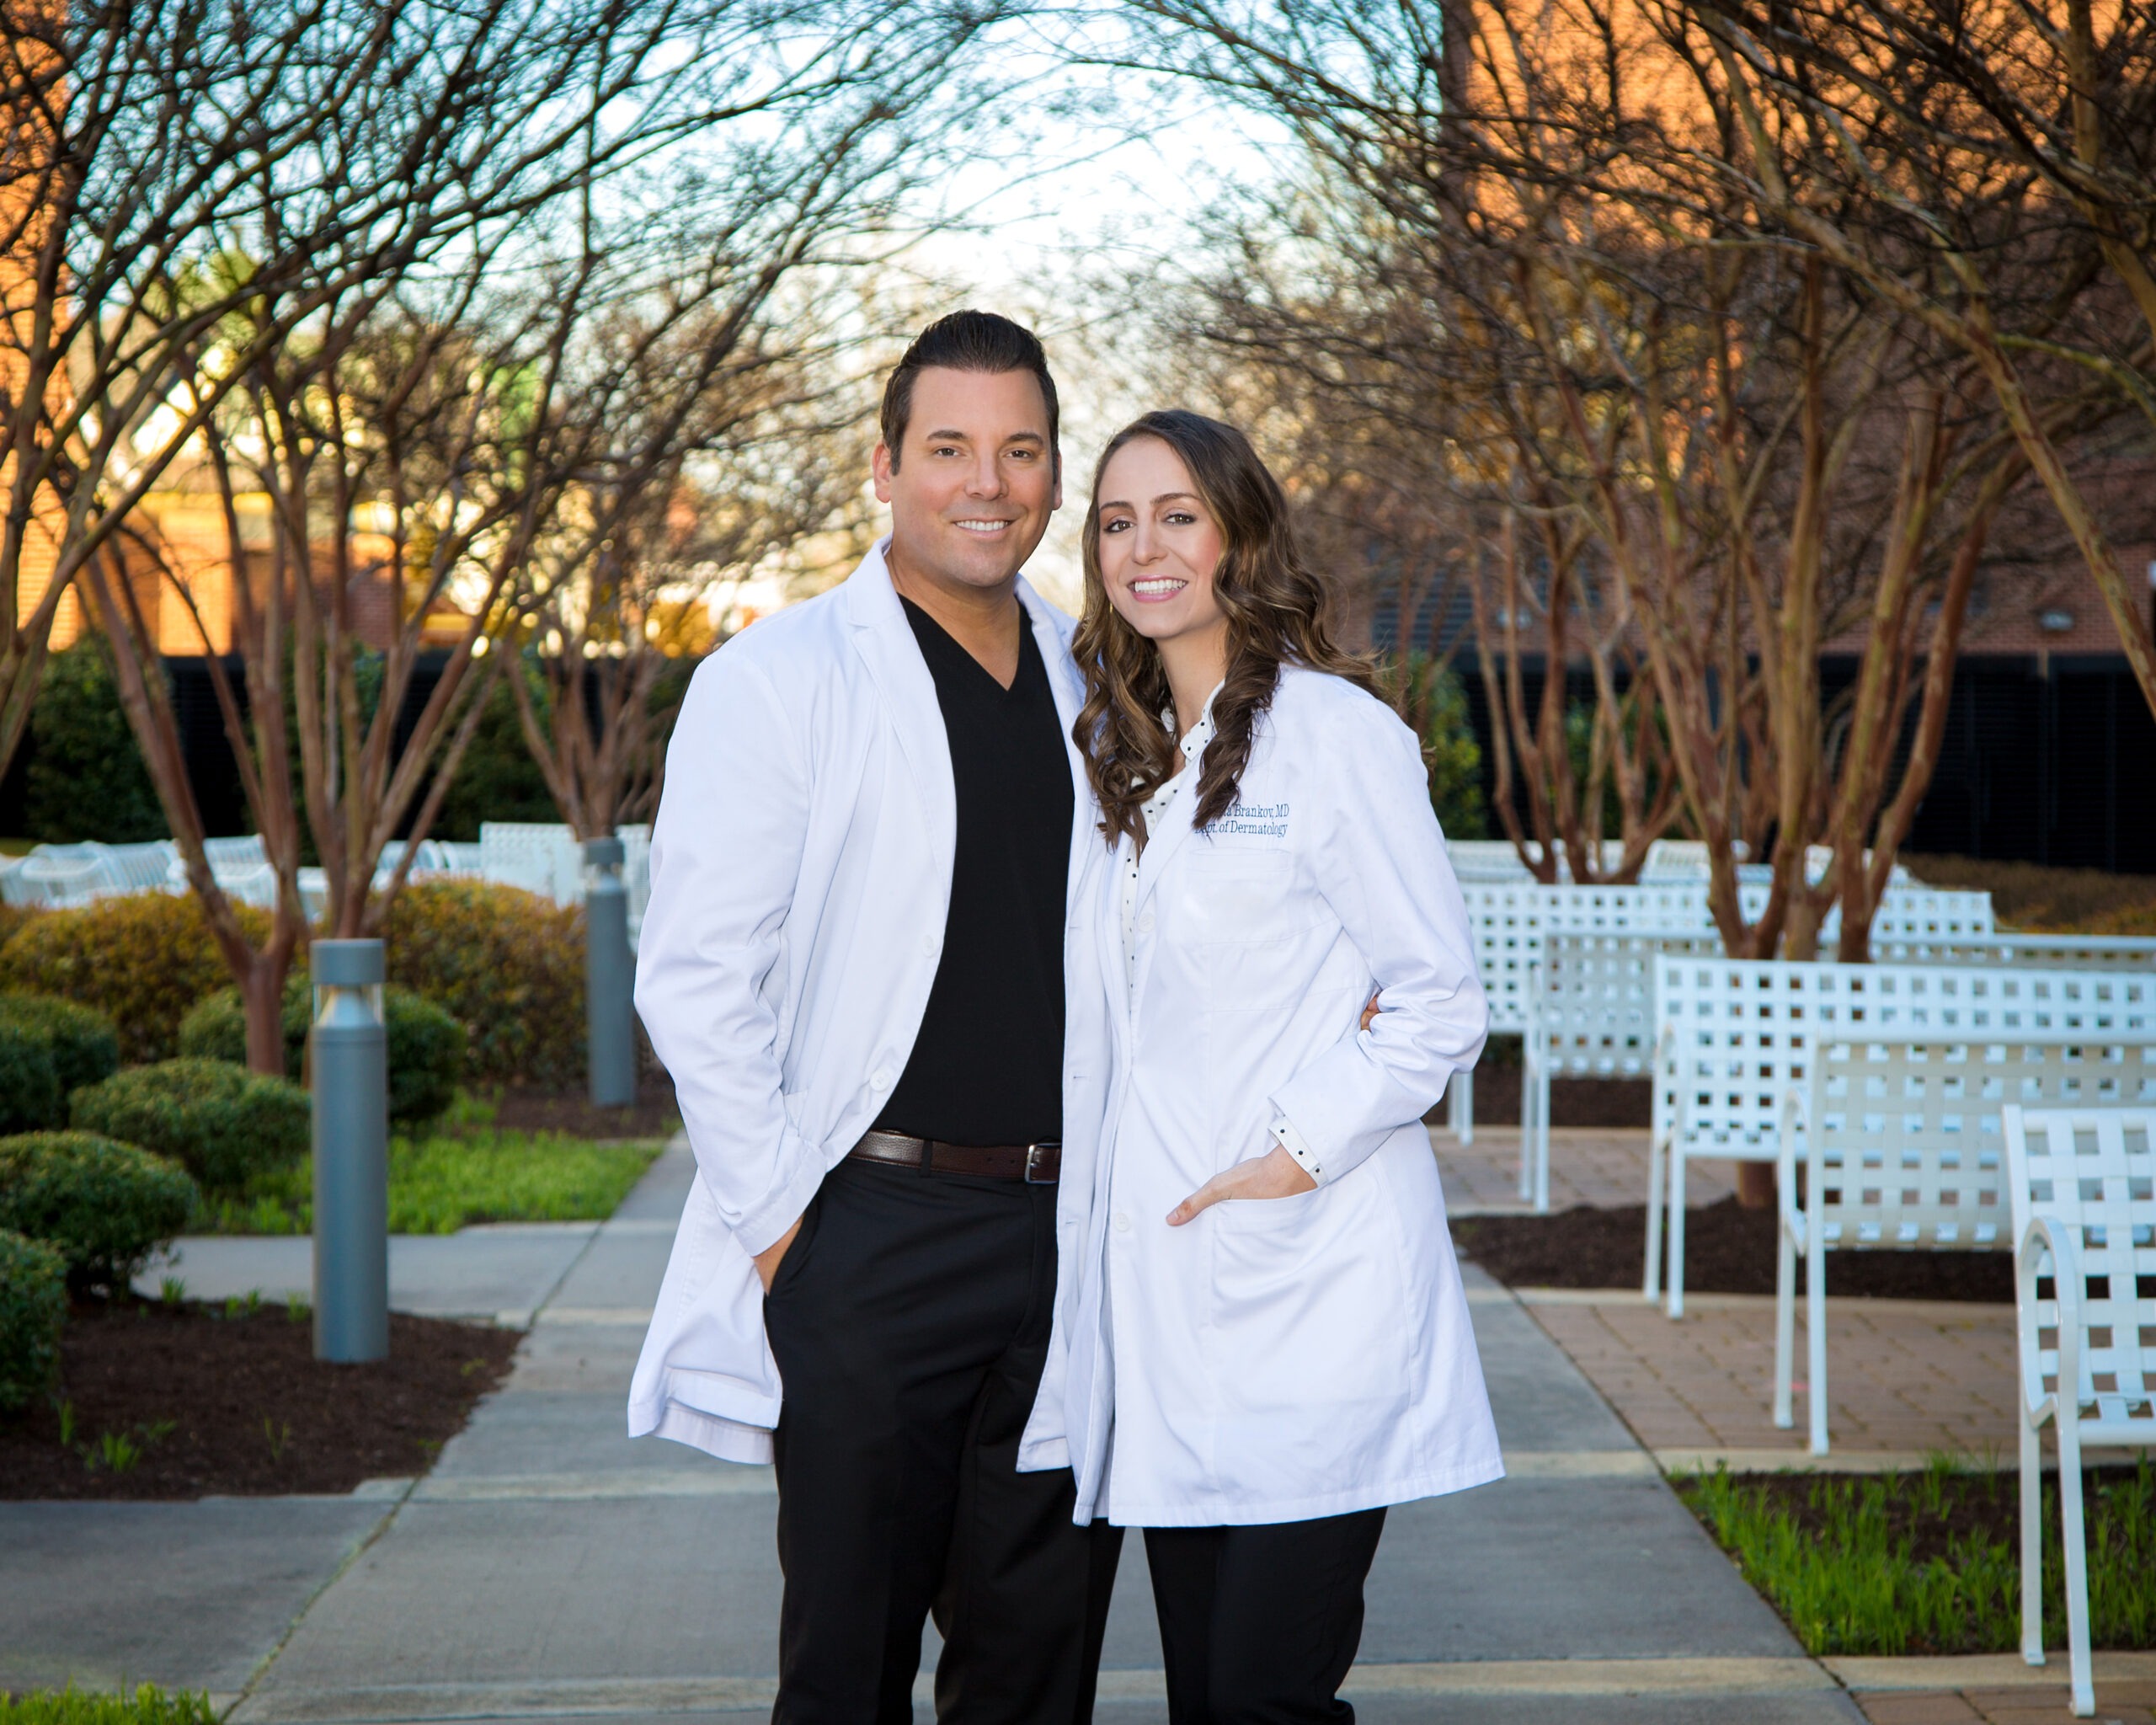 Dr. Eddy & Dr. Nikoleta outside in lab coats